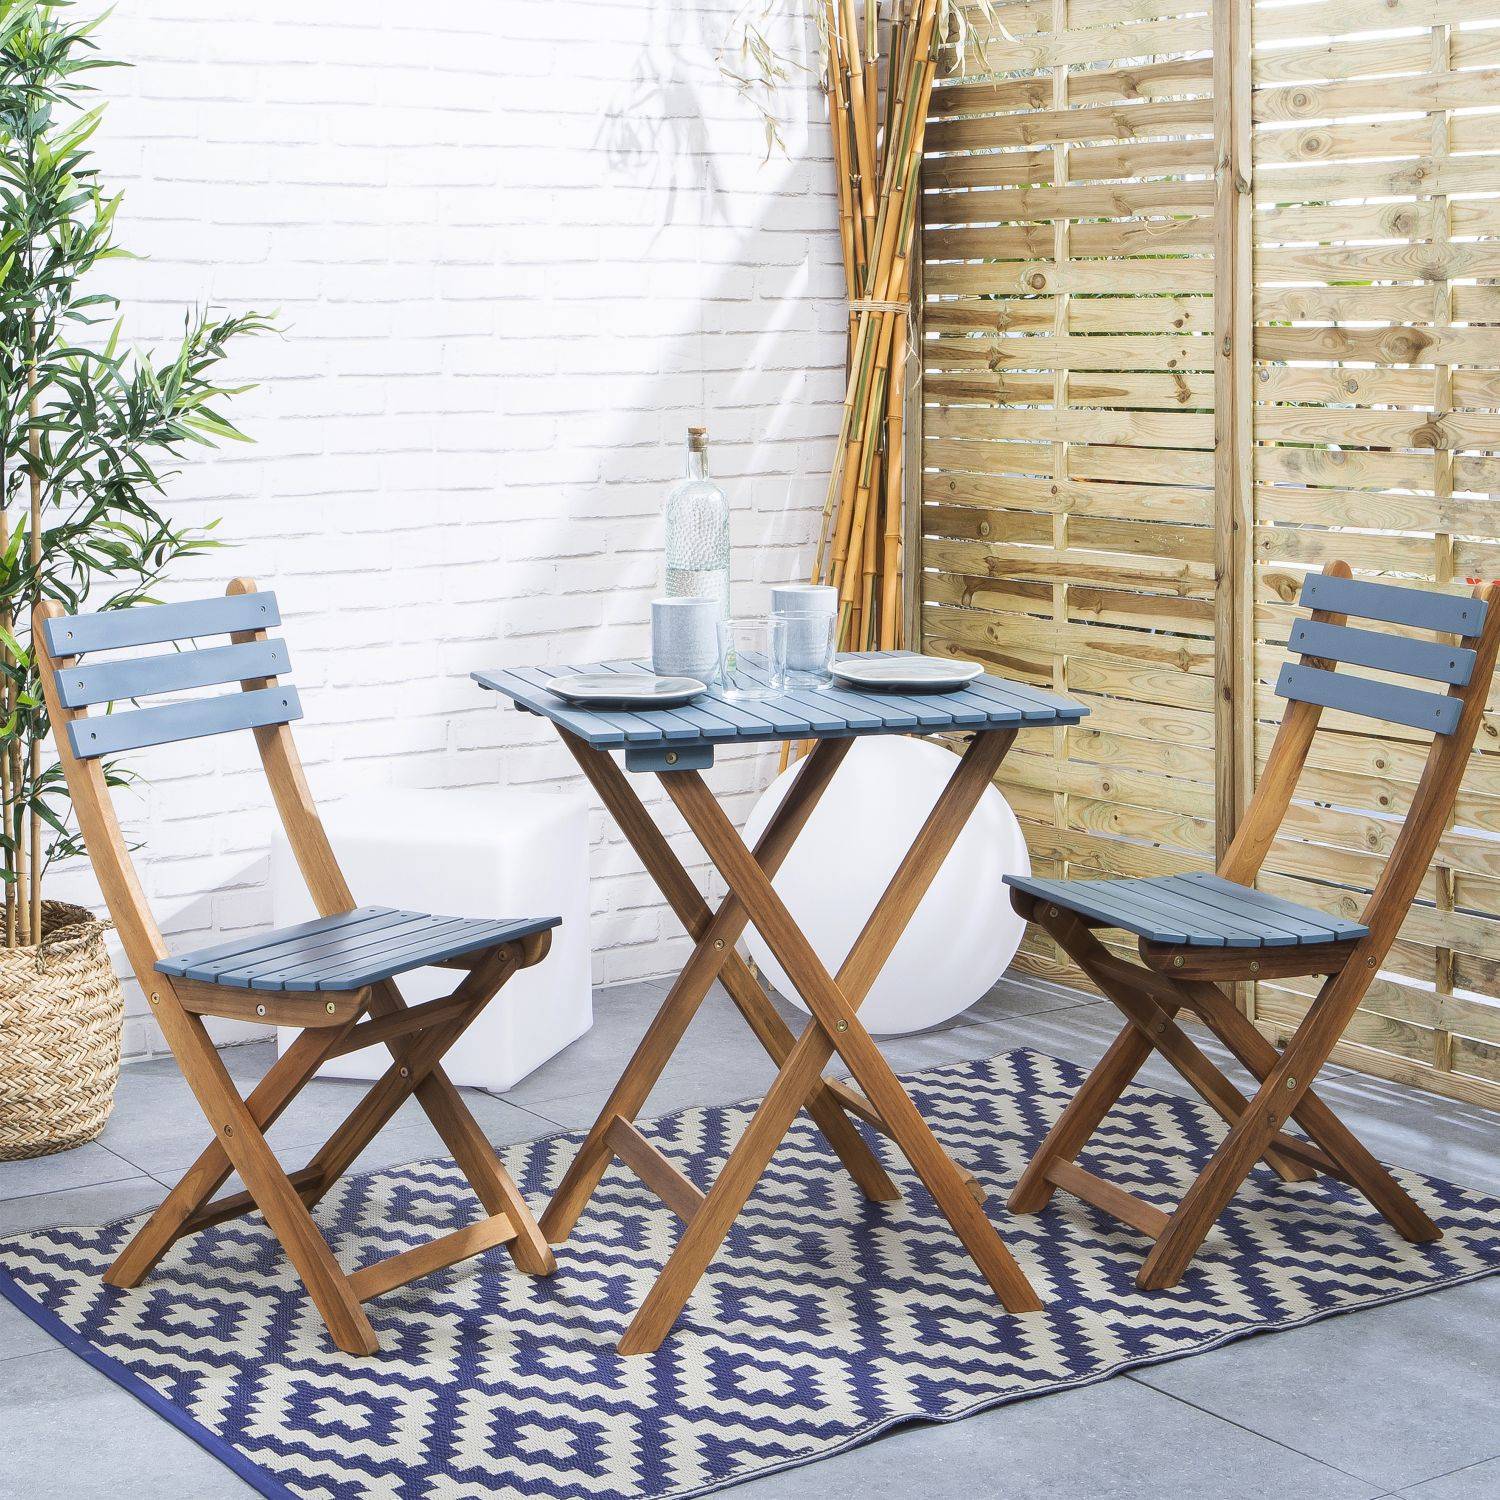 Conjunto de jardín de madera Bistro 60x60cm - Barcelona - azul grisáceo, mesa plegable cuadrada bicolor con 2 sillas plegables, acacia,sweeek,Photo1